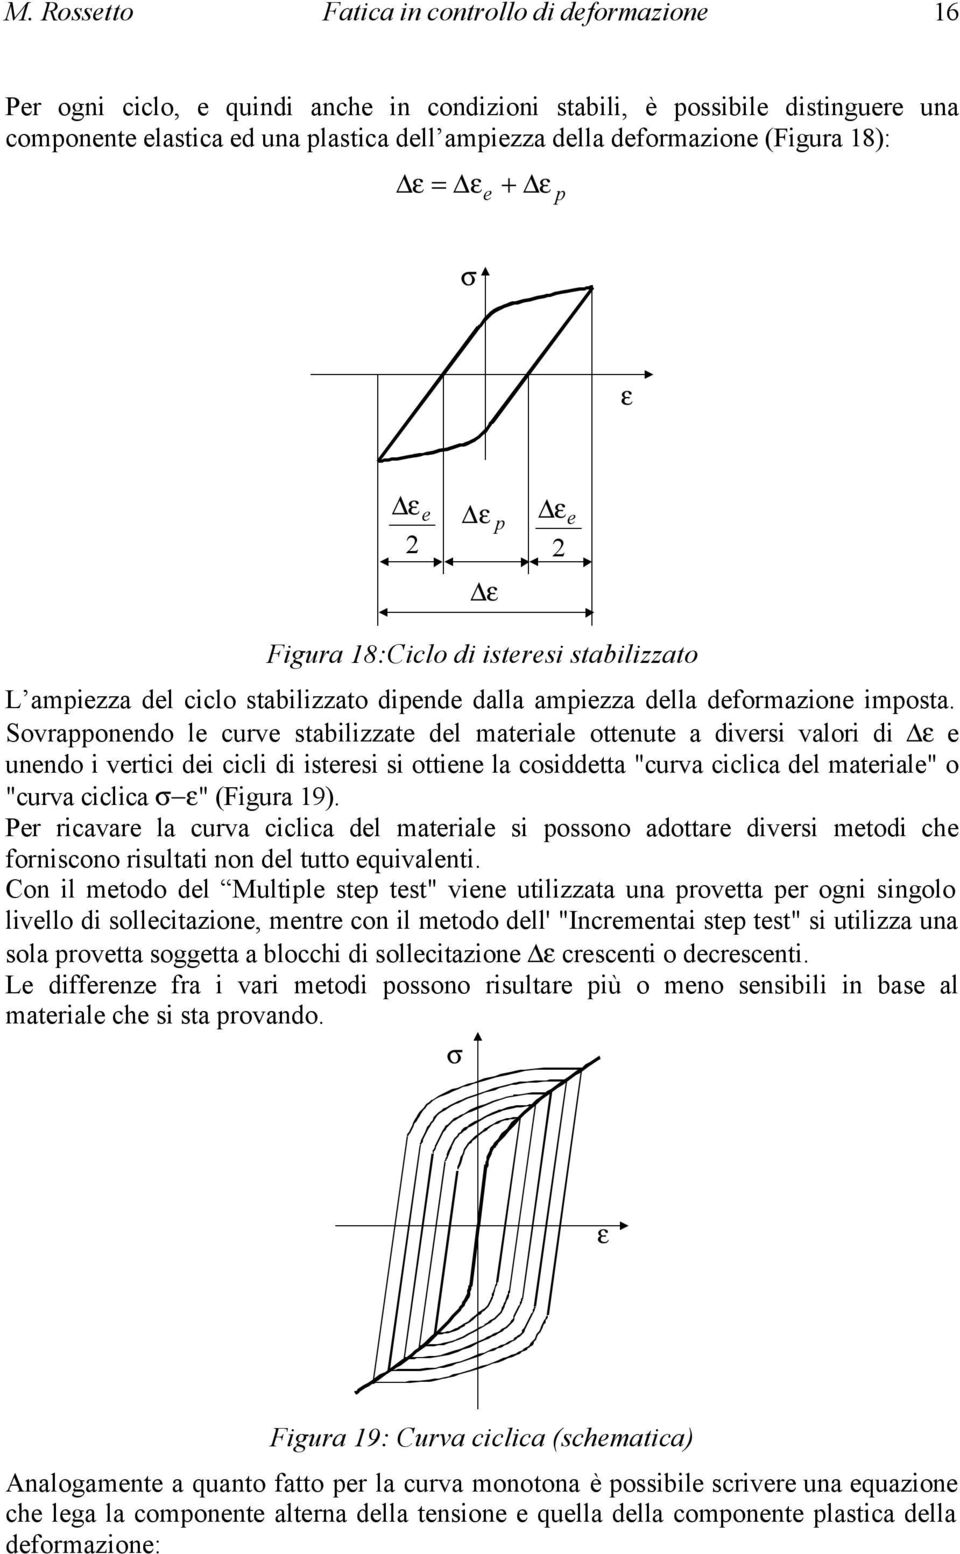 Sovrapponendo le curve stabilizzate del materiale ottenute a diversi valori di e unendo i vertici dei cicli di isteresi si ottiene la cosiddetta "curva ciclica del materiale" o "curva ciclica "